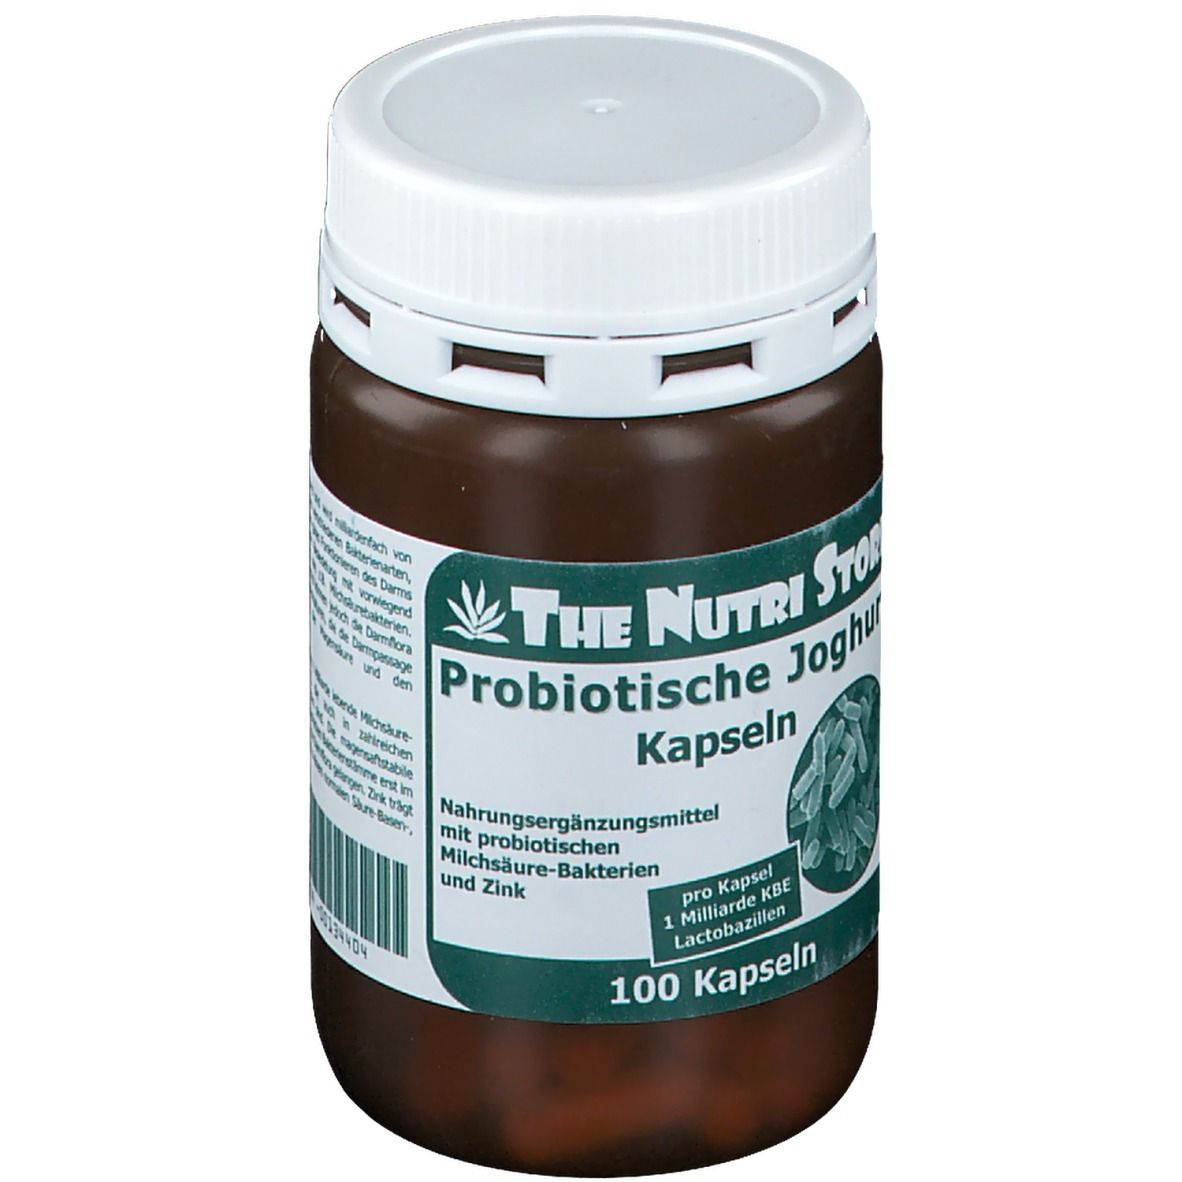 Probiotische Joghurt Kapseln